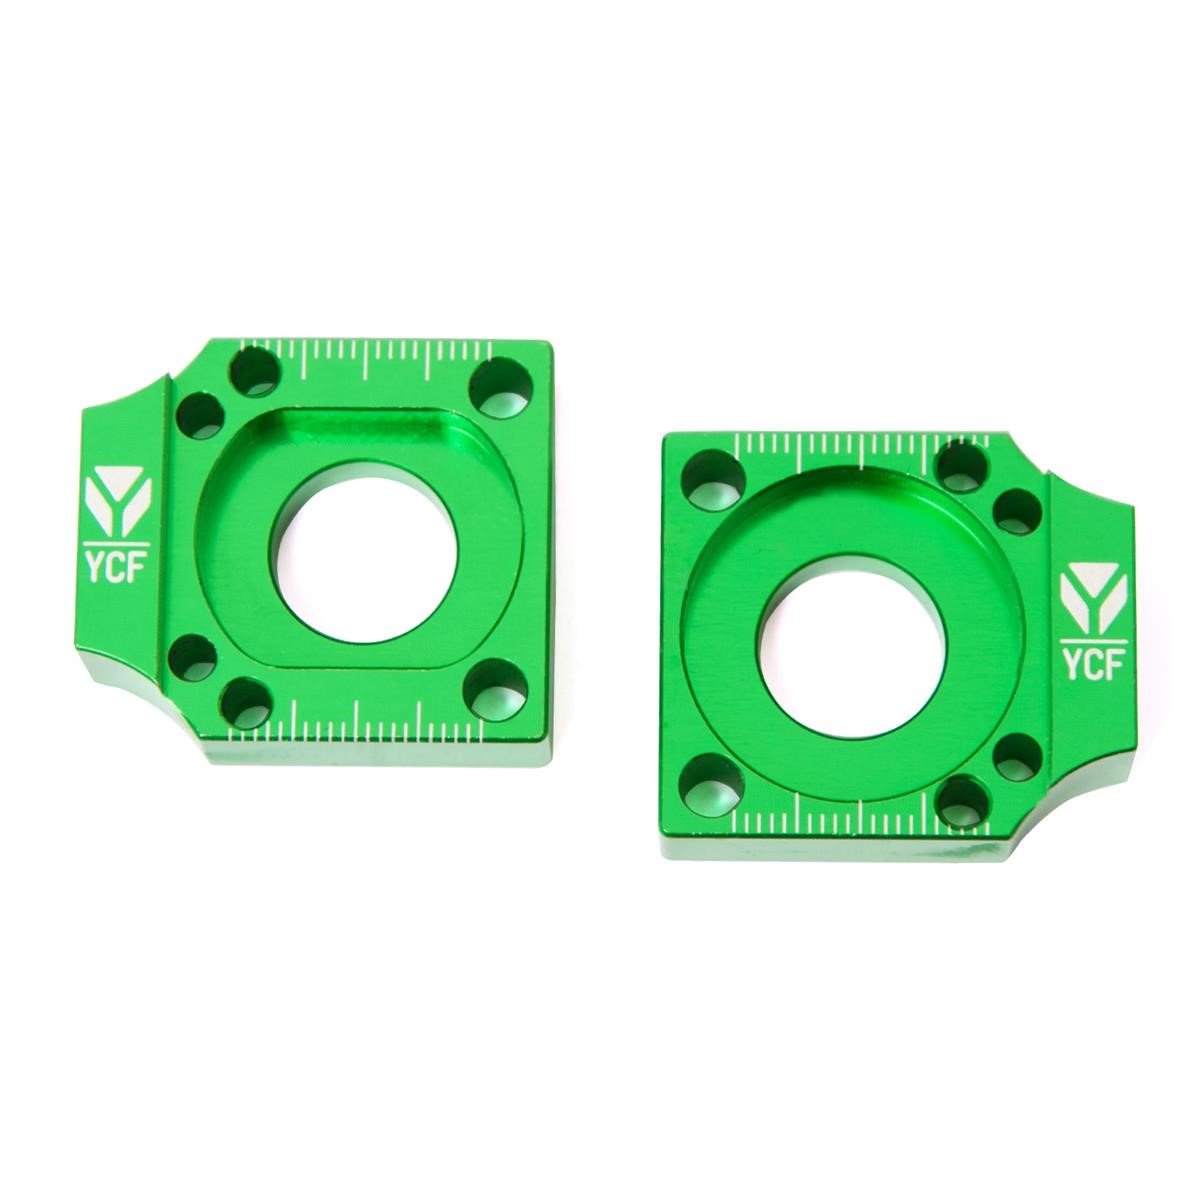 YCF Registro Tendicatena  per Forcellone in Alluminio, Verde